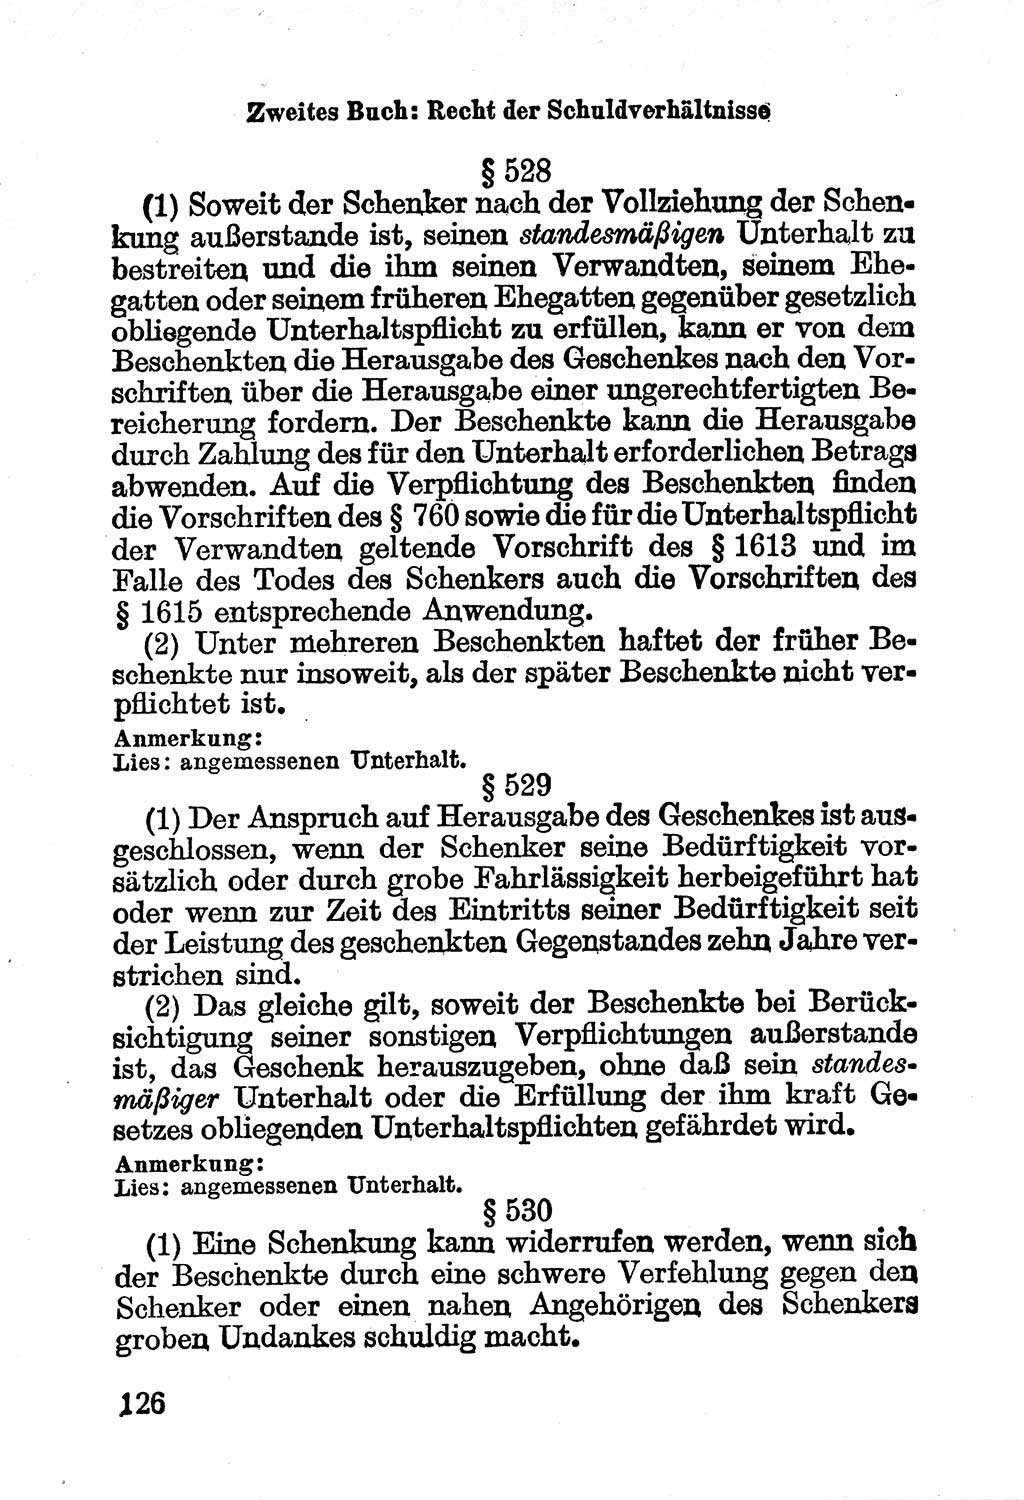 Bürgerliches Gesetzbuch (BGB) nebst wichtigen Nebengesetzen [Deutsche Demokratische Republik (DDR)] 1956, Seite 126 (BGB Nebenges. DDR 1956, S. 126)